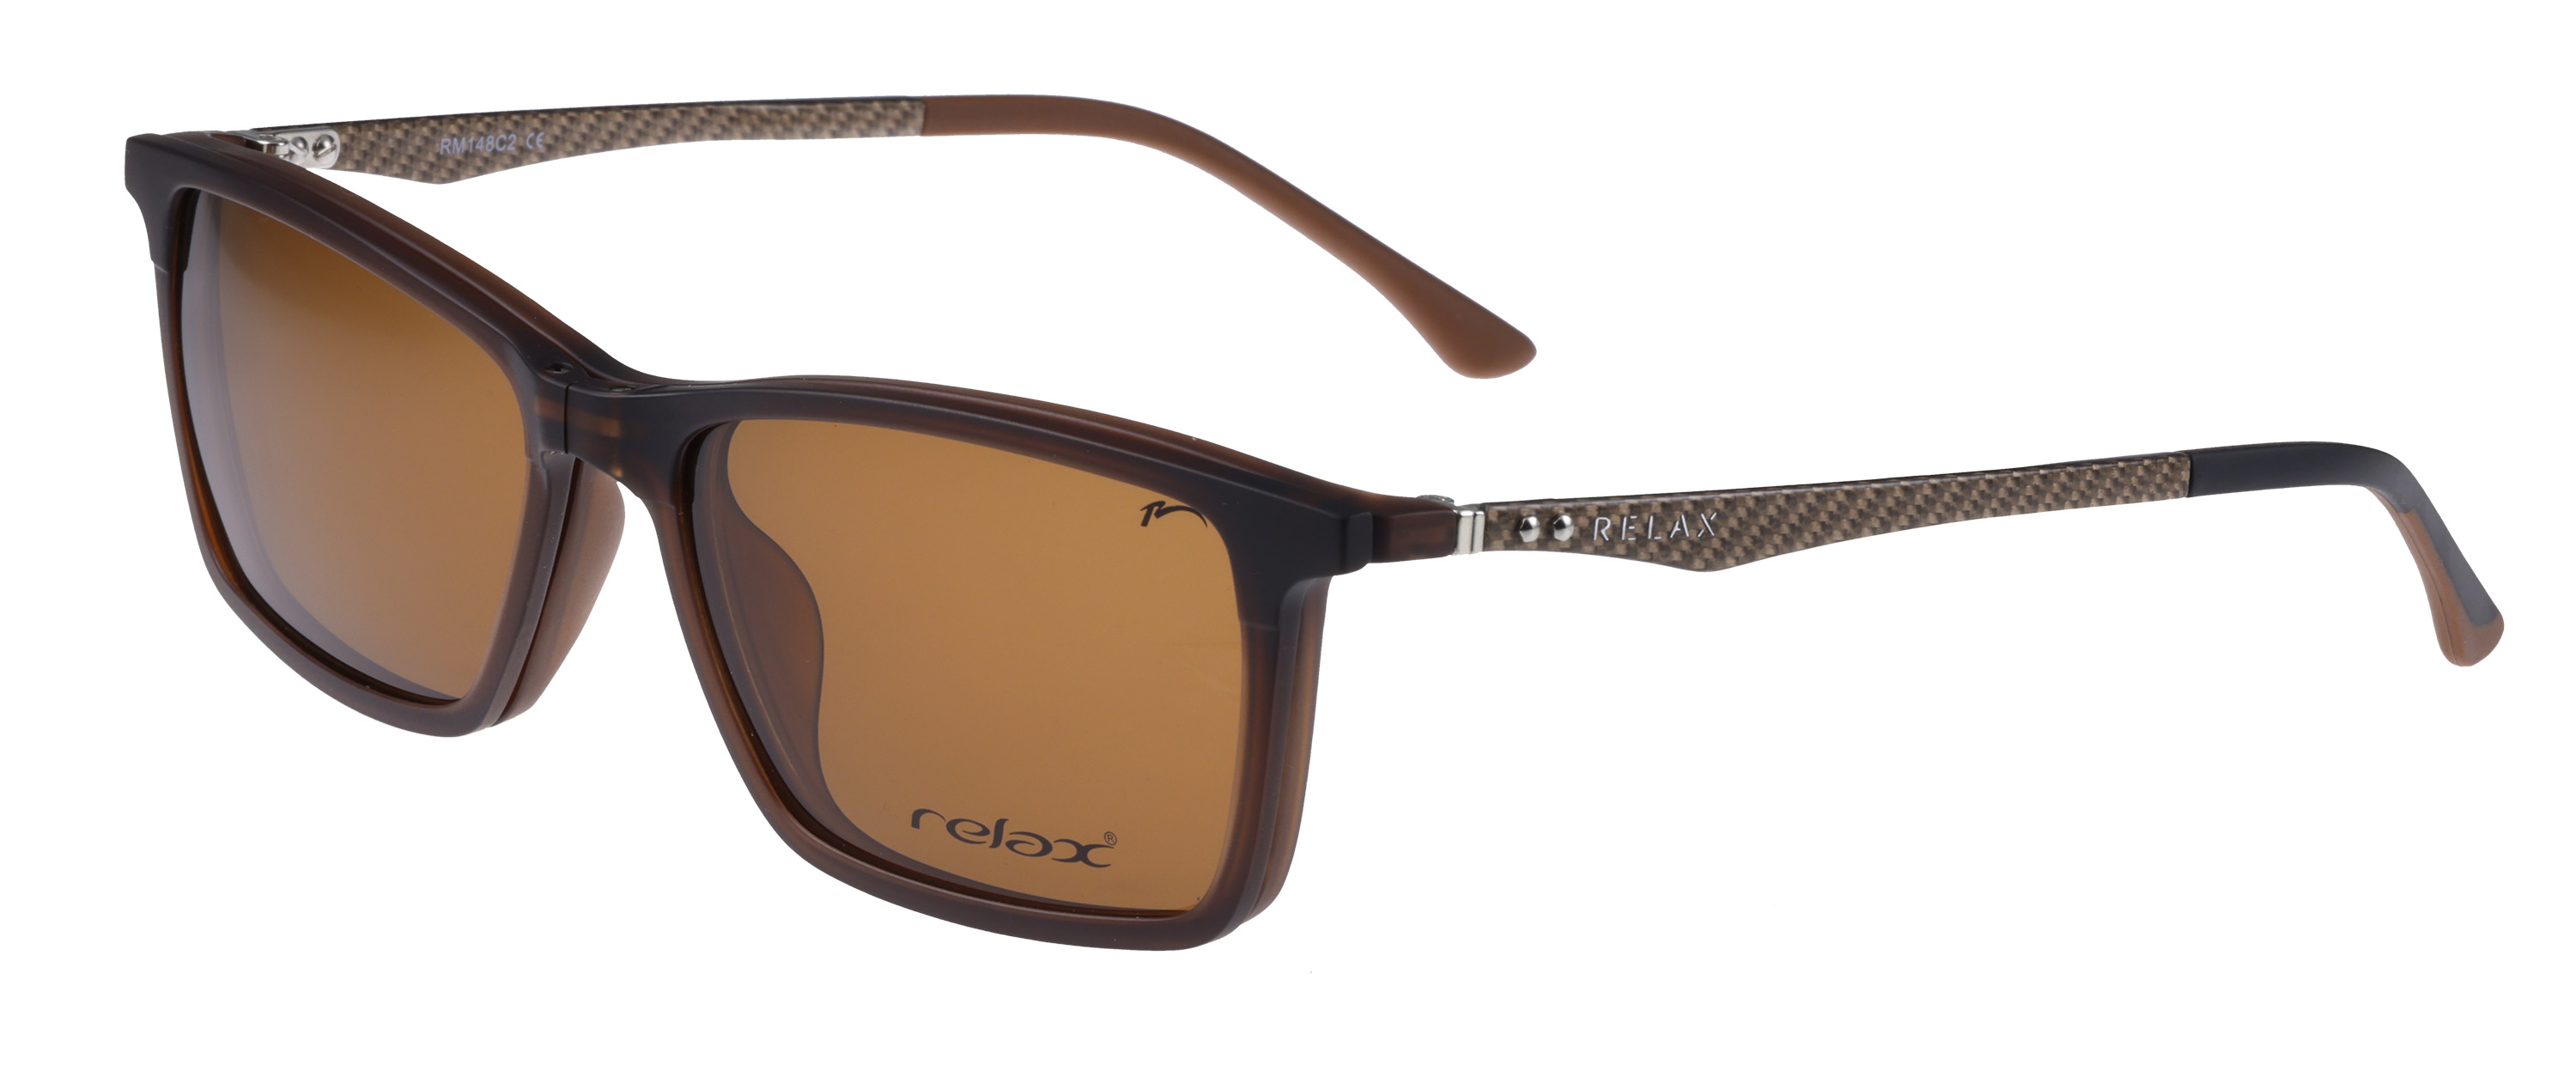 Náhradní dioptrický klip k brýlím Relax Orly RM148C2clip -